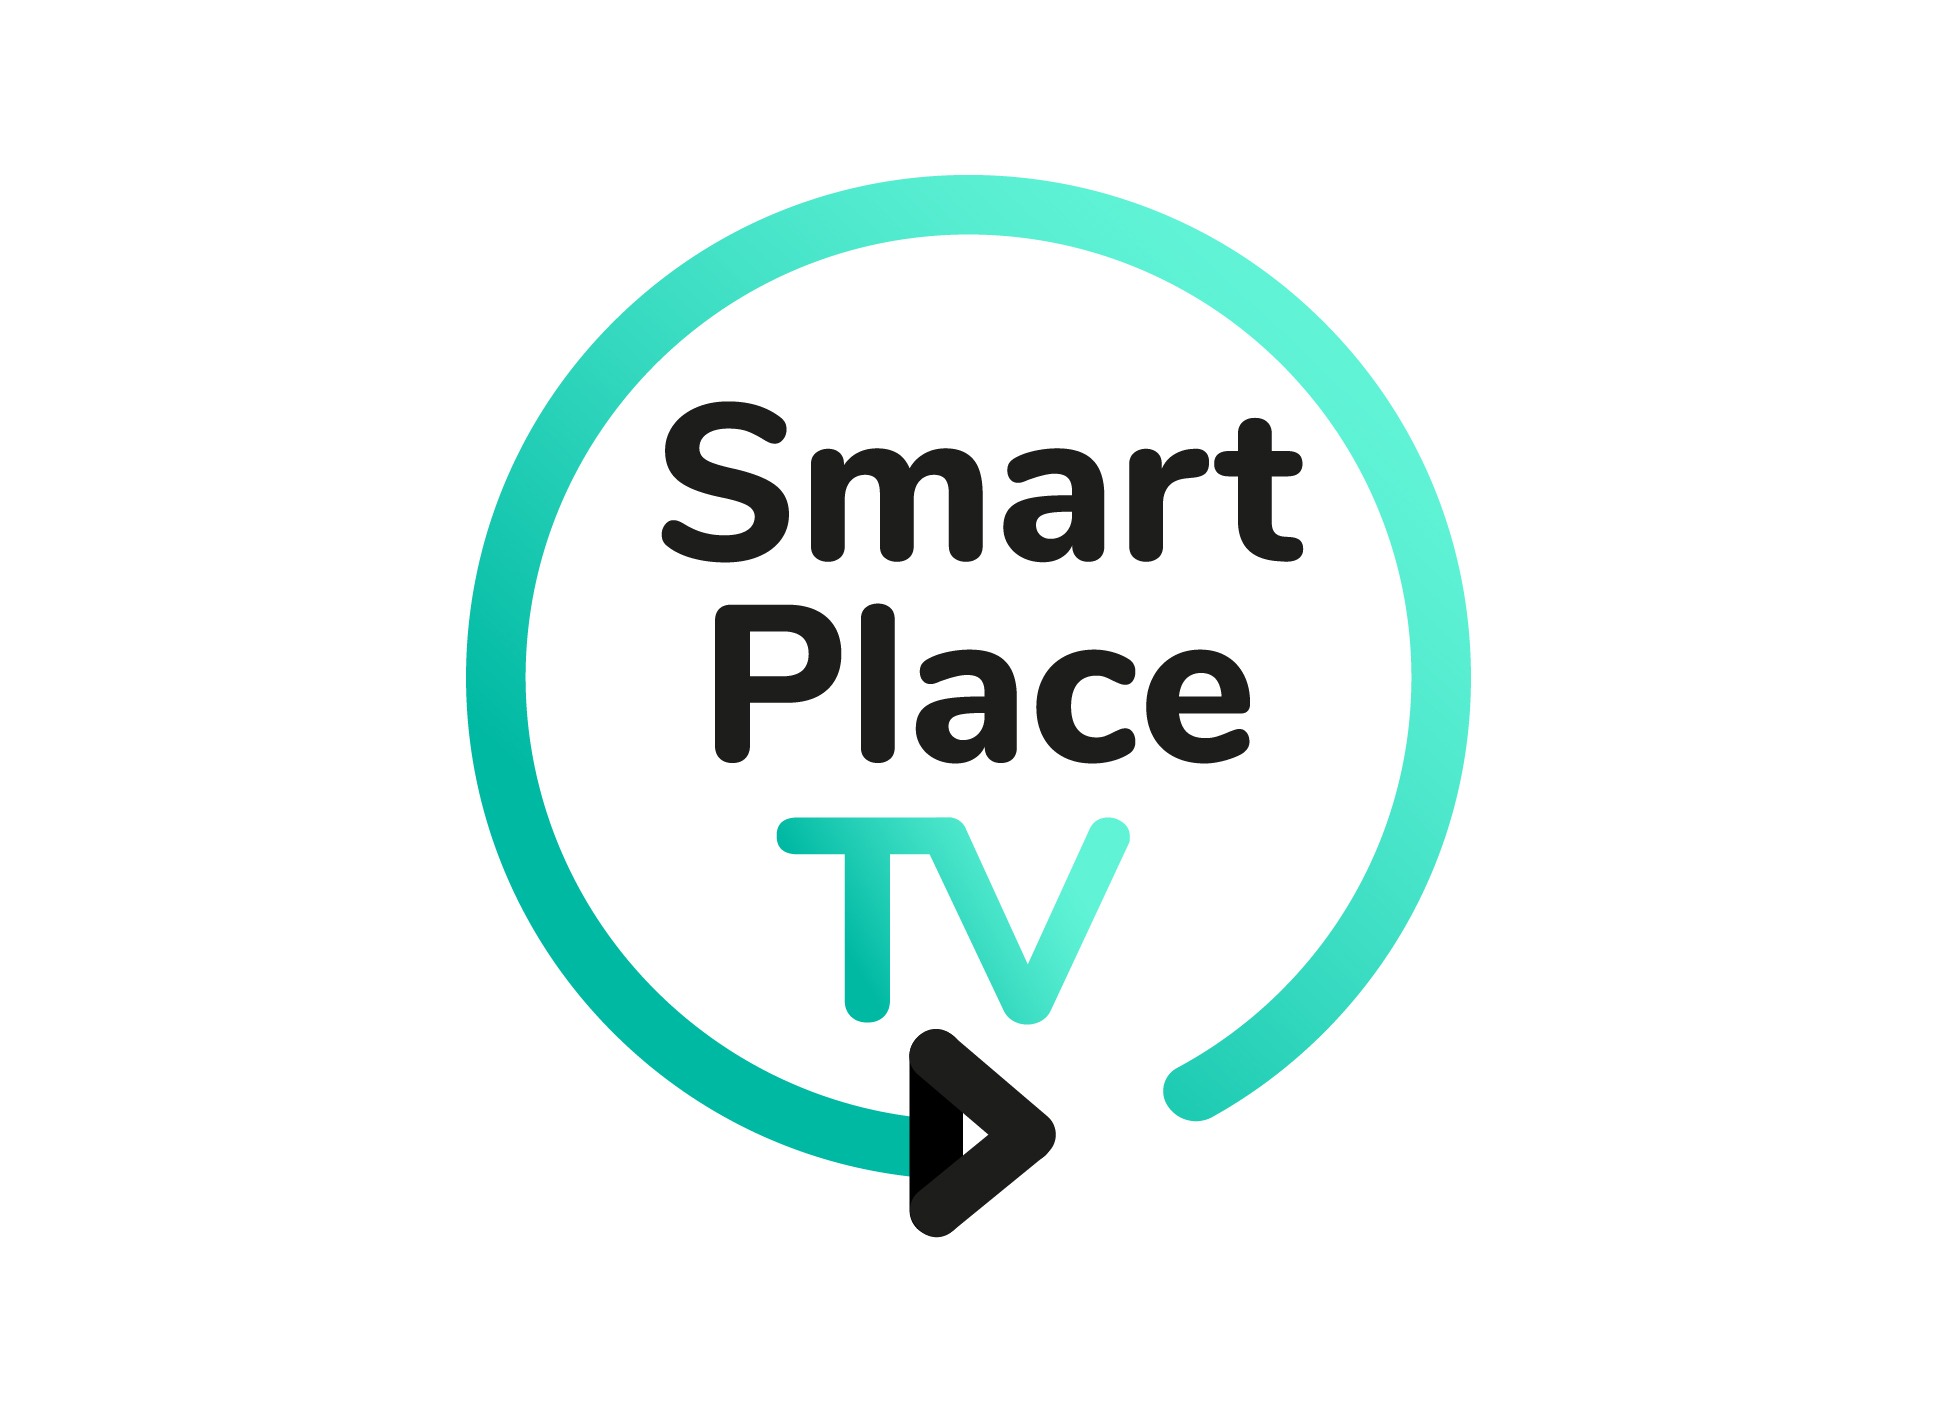 Smart Place versión 3